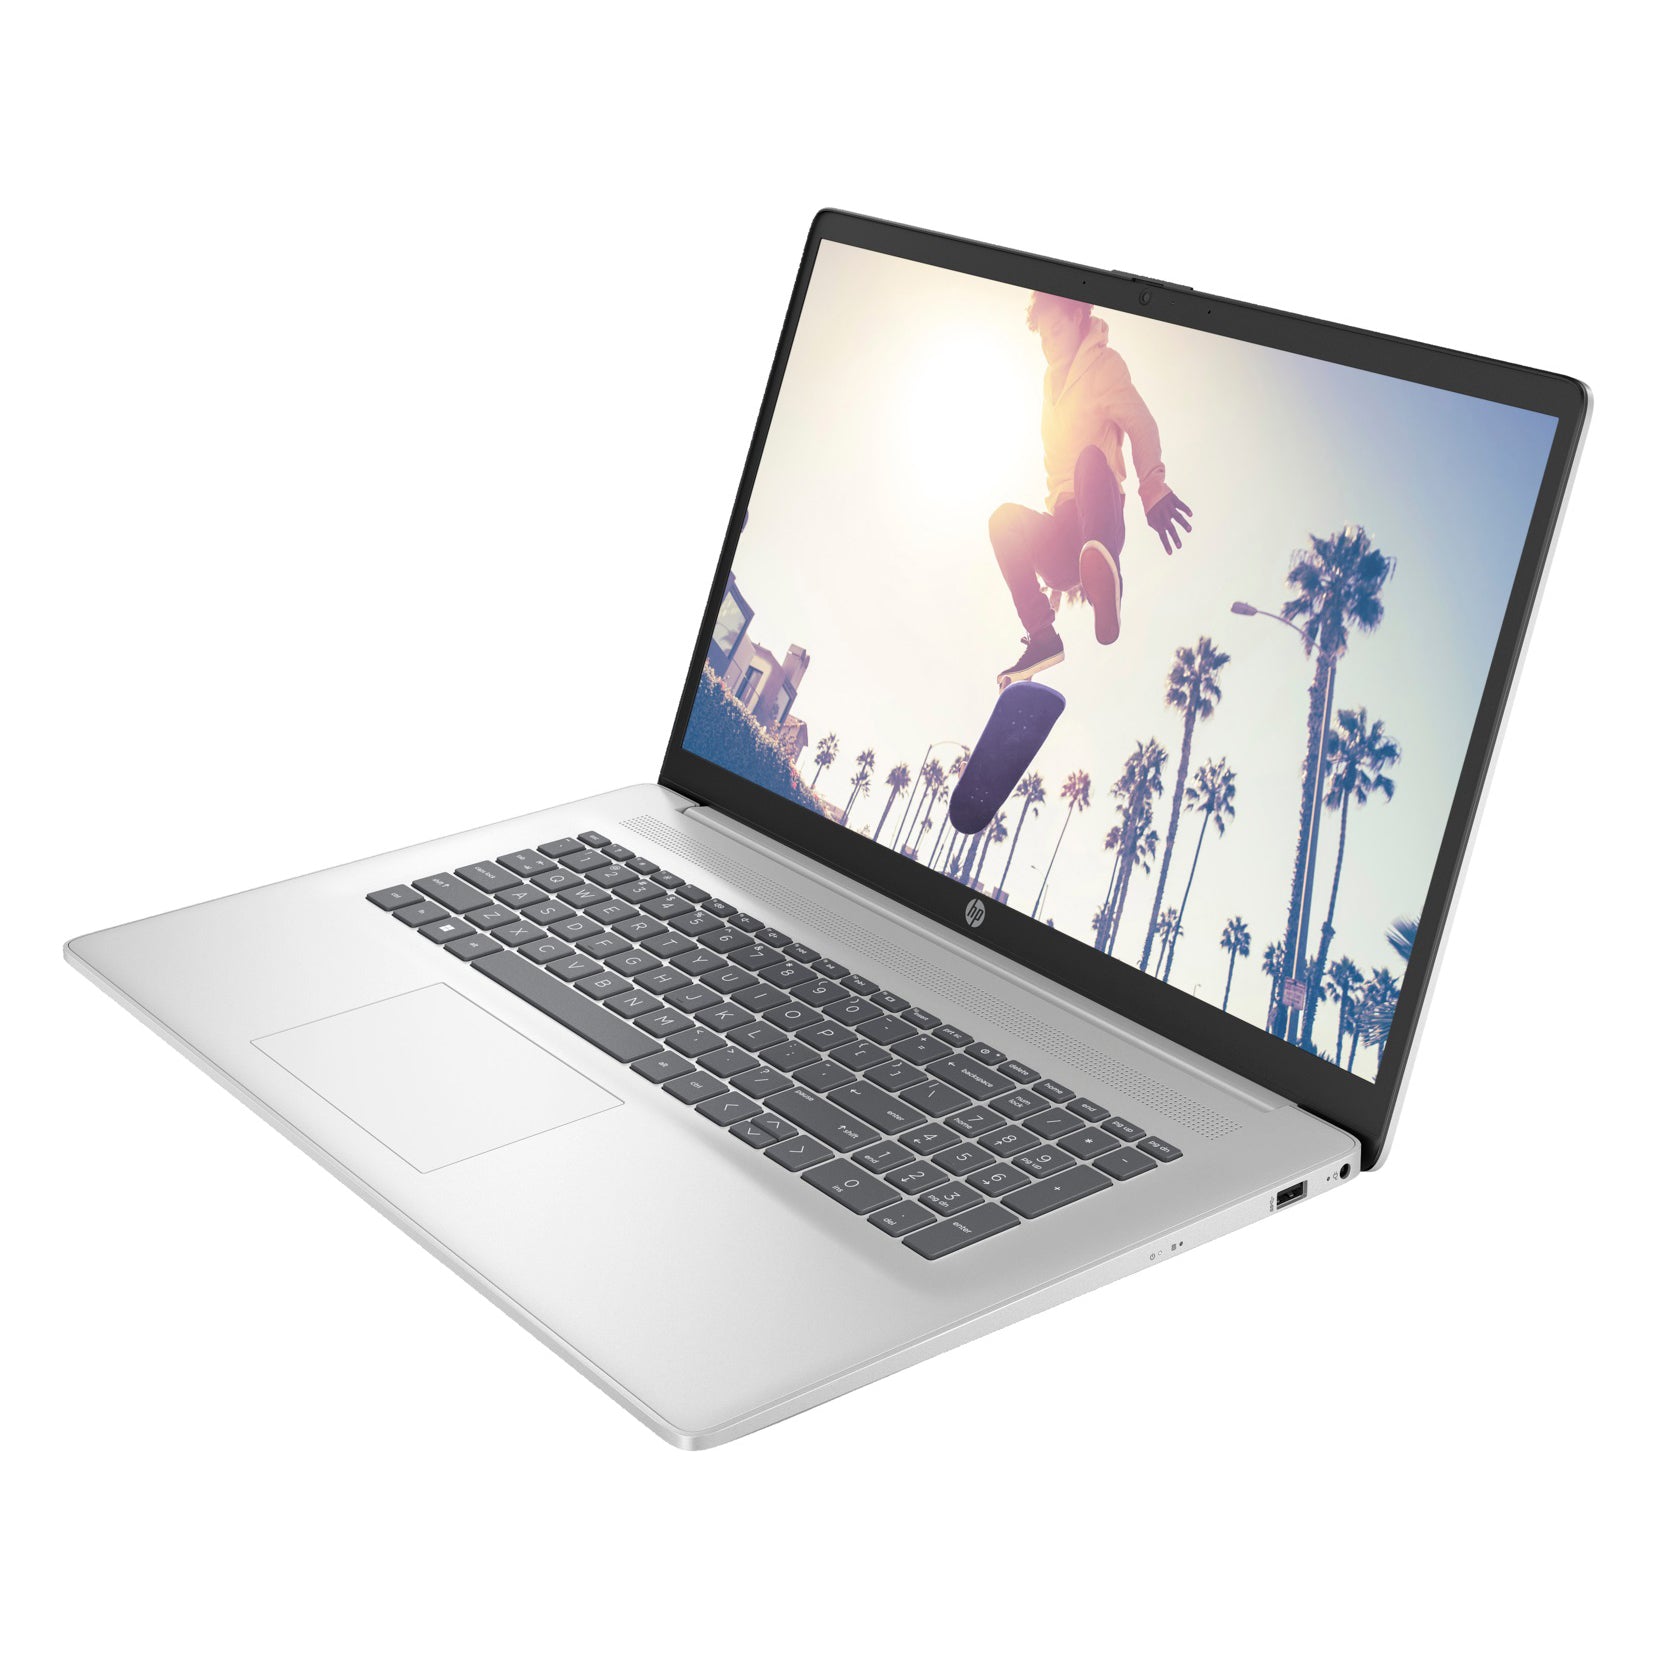 Le PC HP Laptop 17-cn0477nf